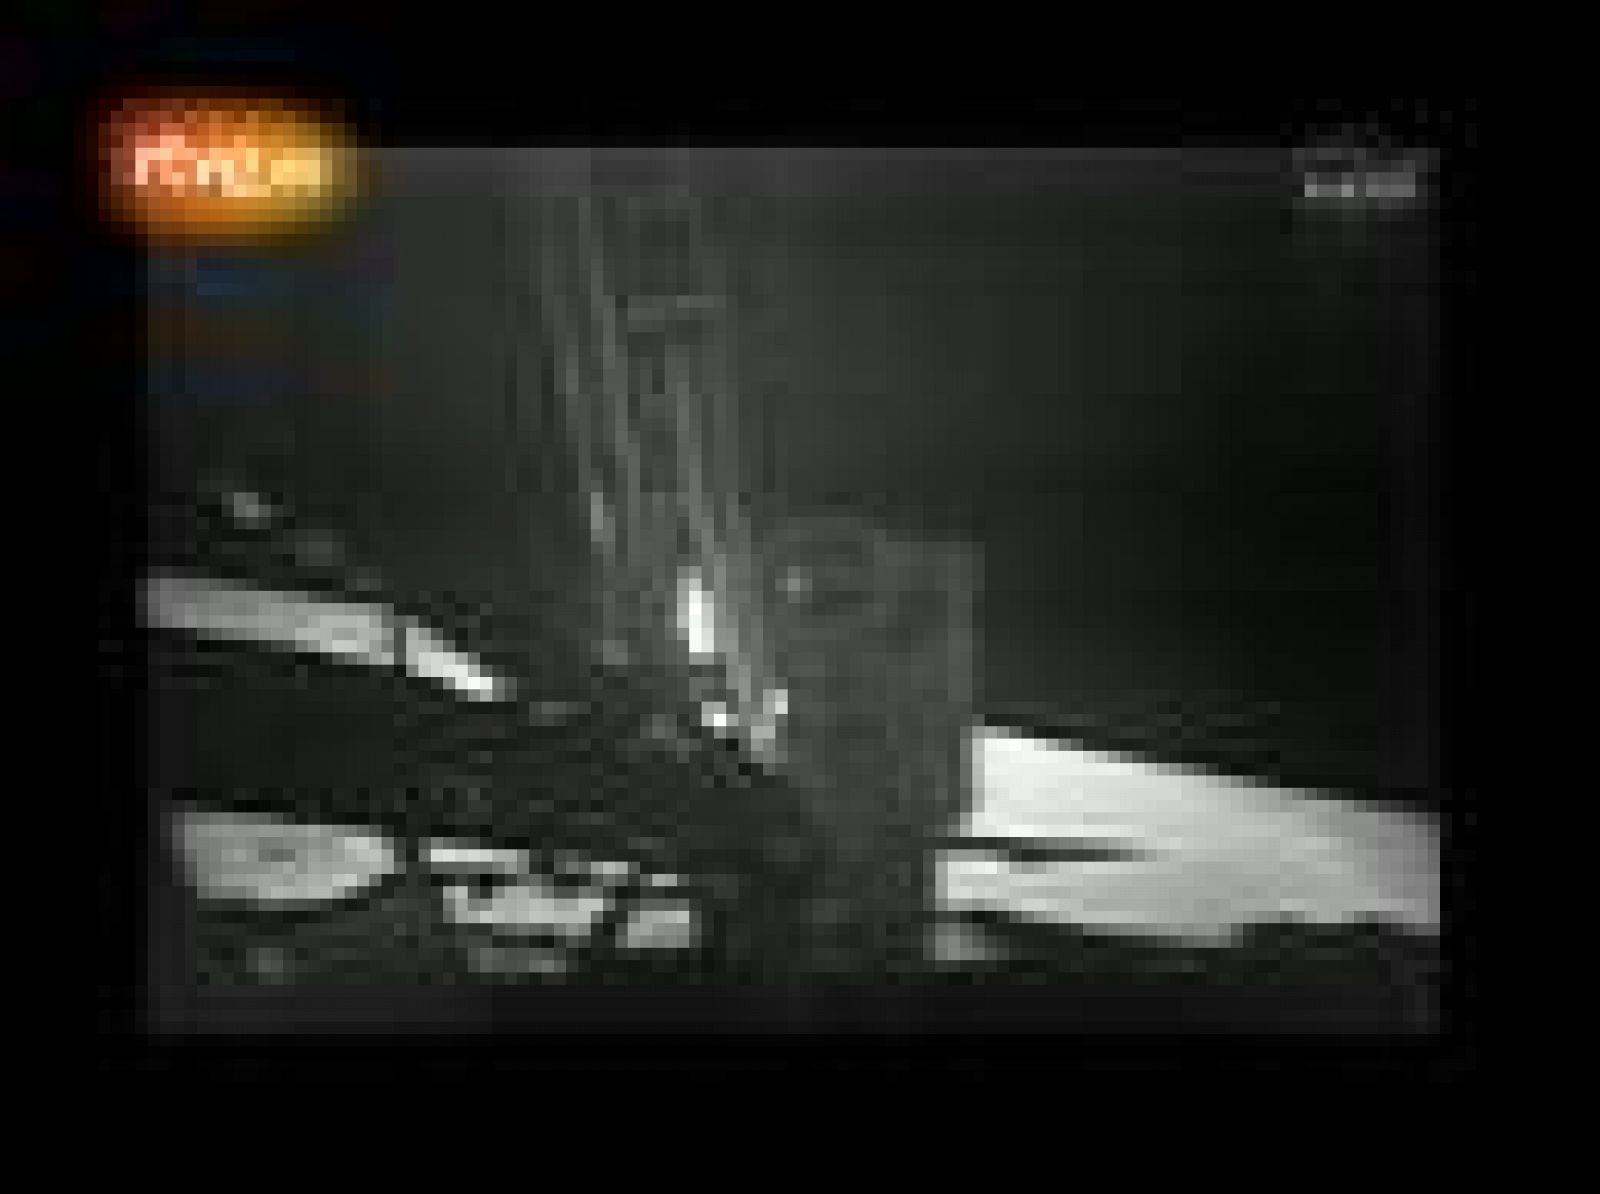 Vídeo restaurado por la NASA de la llegada de los astronautas Neil Armstrong, Edwin Aldrin y Michael Collins a la luna. La agencia espacial norteamericana también ha recuperado imágenes inéditas de aquel día que pueden verse en mejor calidad.